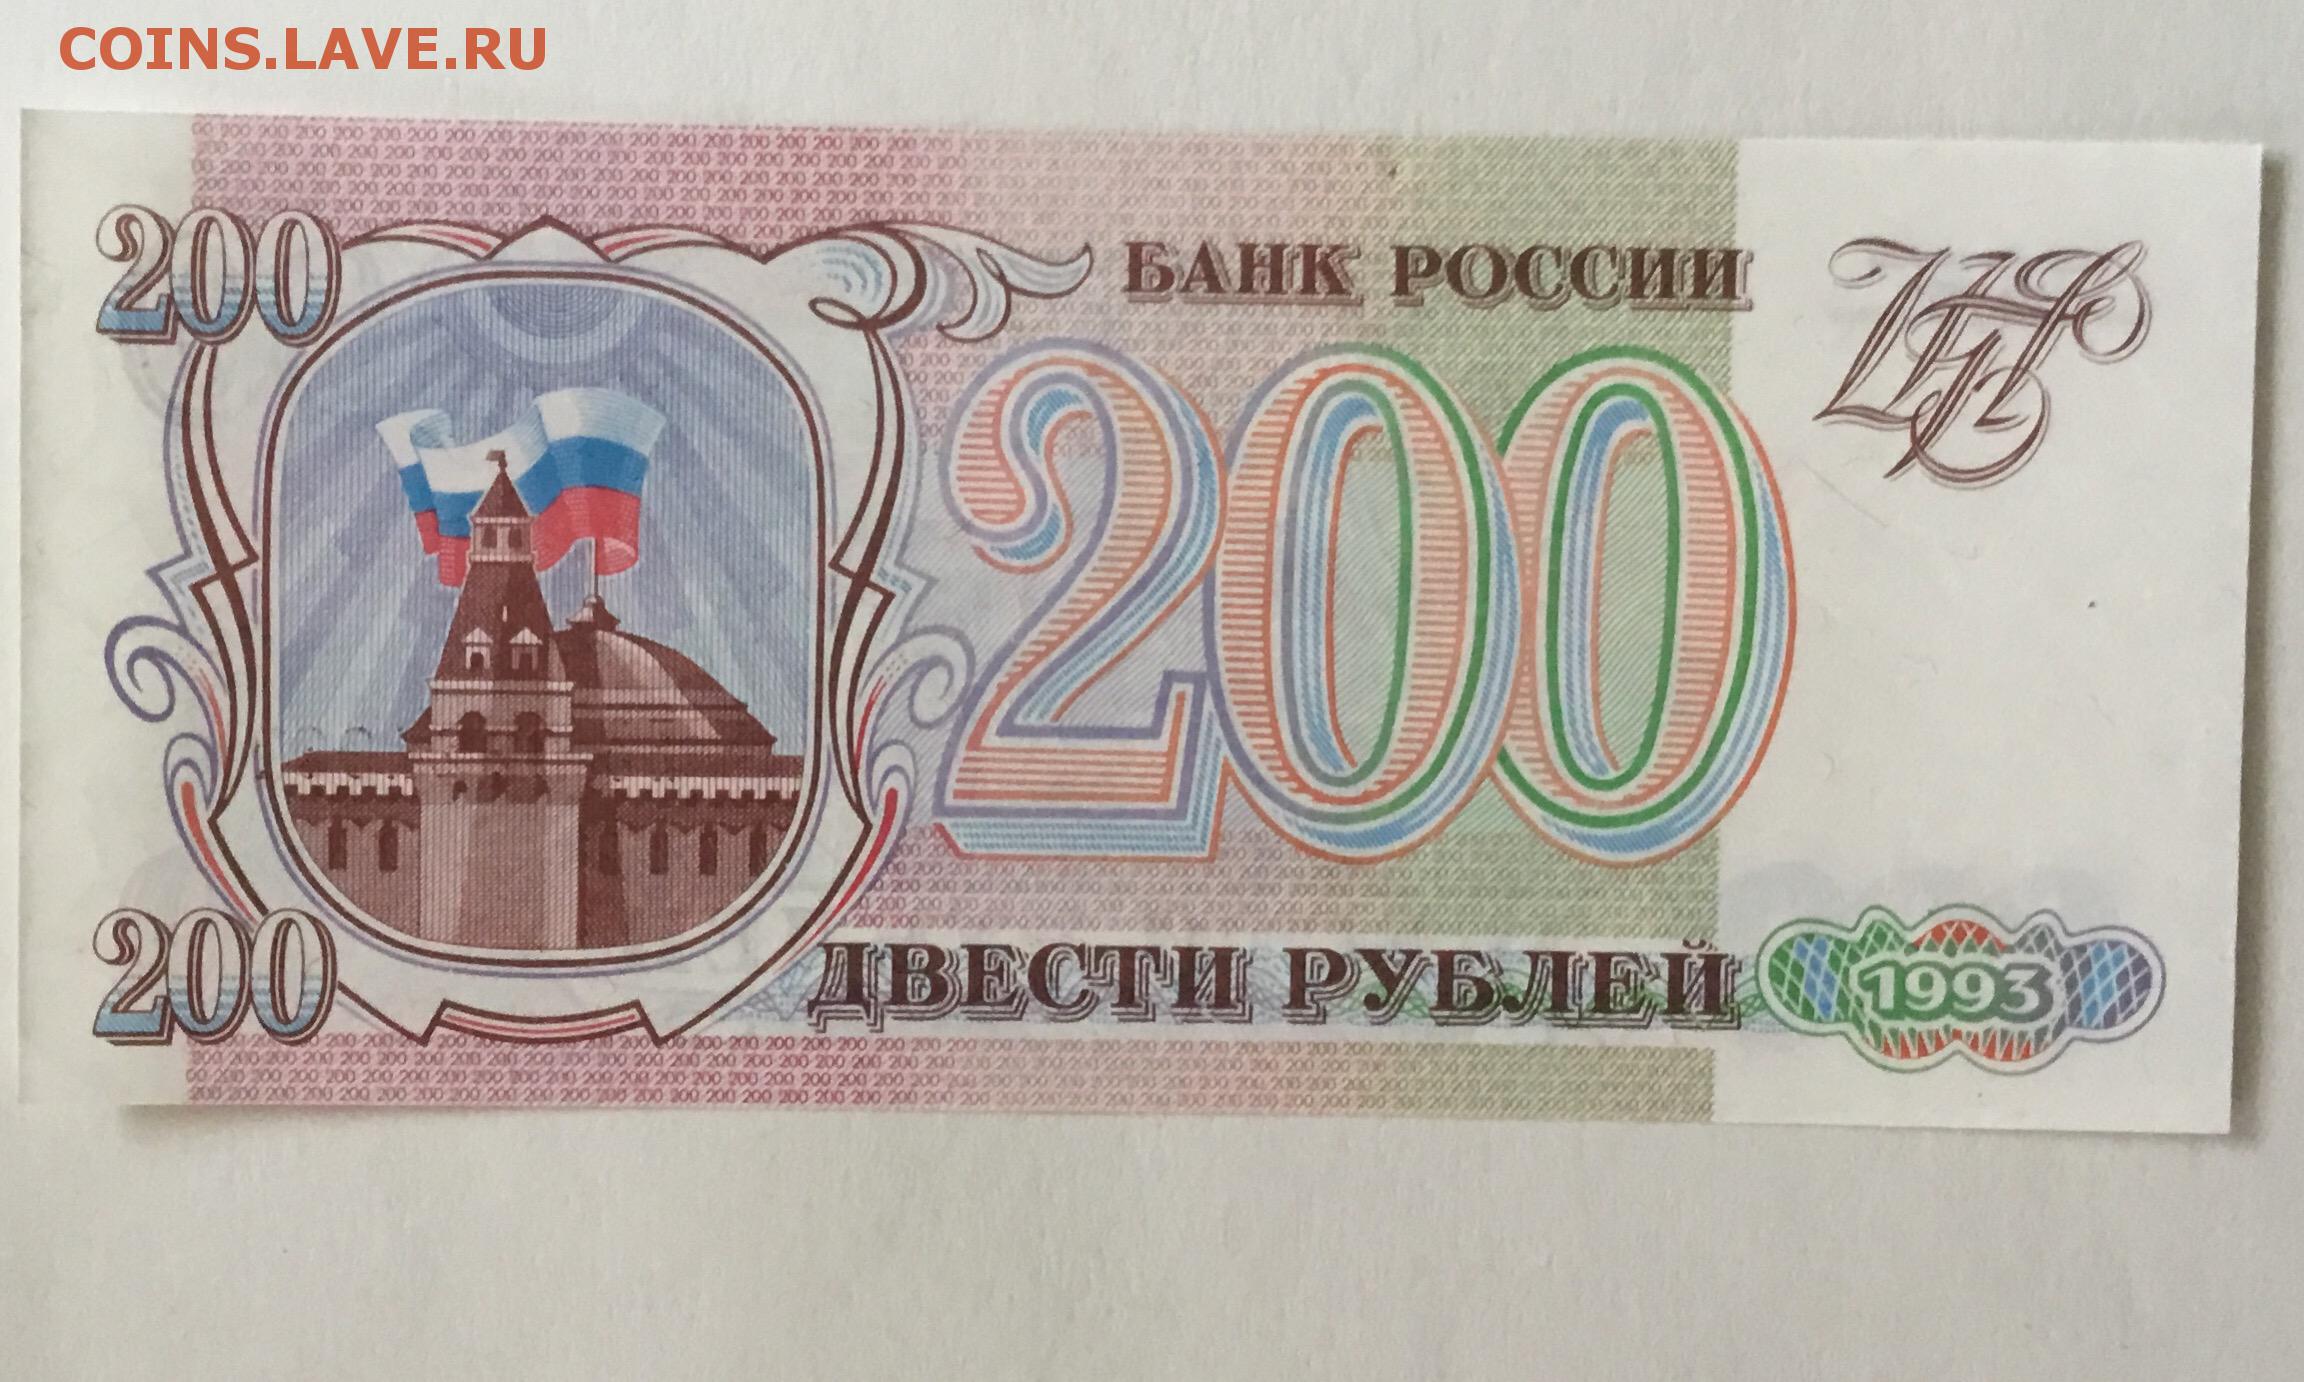 14 200 в рублях. Купюра 200 рублей 1993. 200 Рублей 1993 года. Двести рублей 1993. Банкнота 200 рублей 1993.